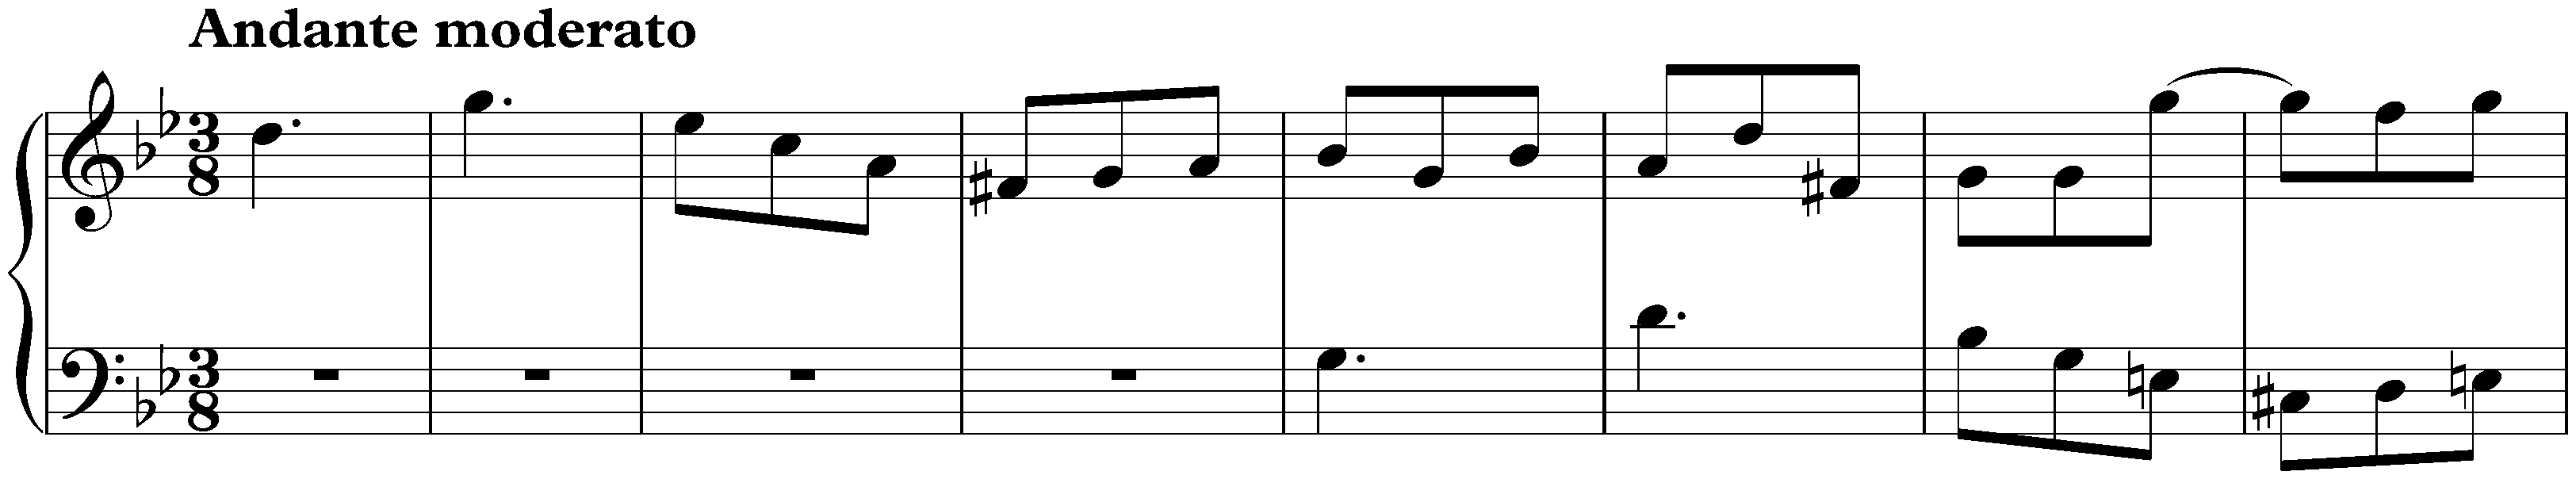 Sonata in G minor, K. 88; 2. Andante moderato